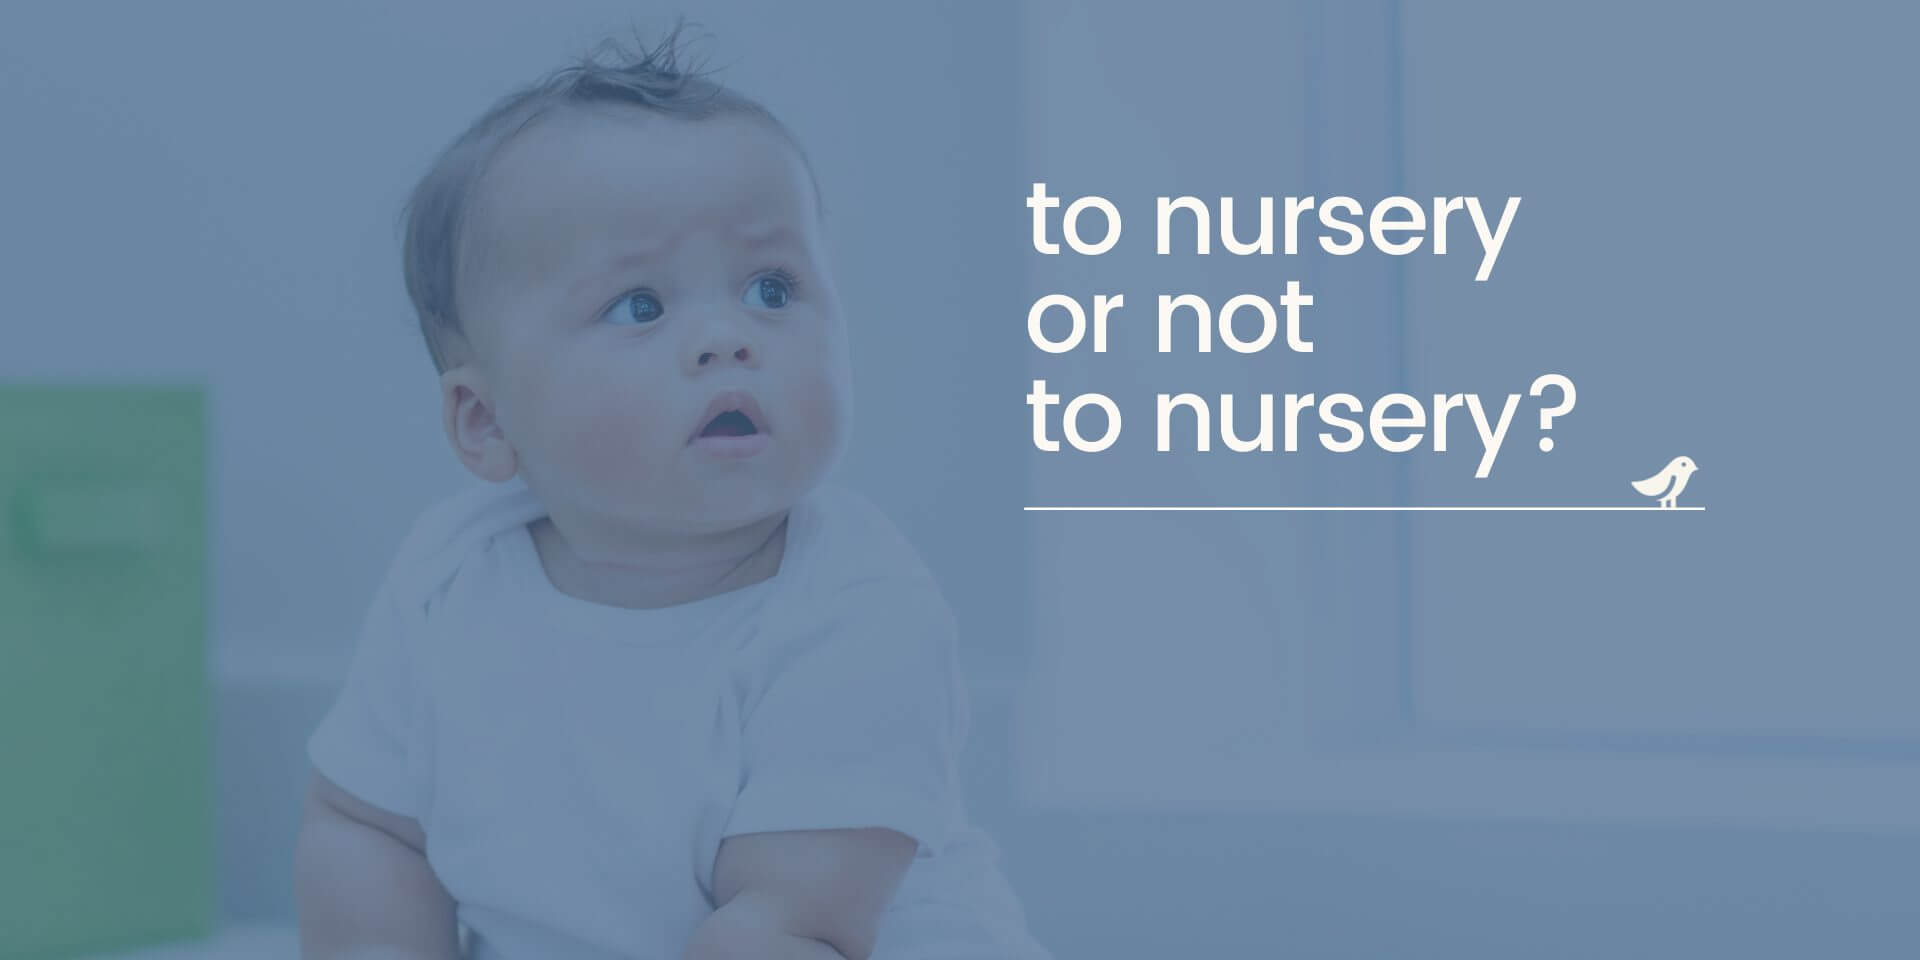 To nursery or not to nursery